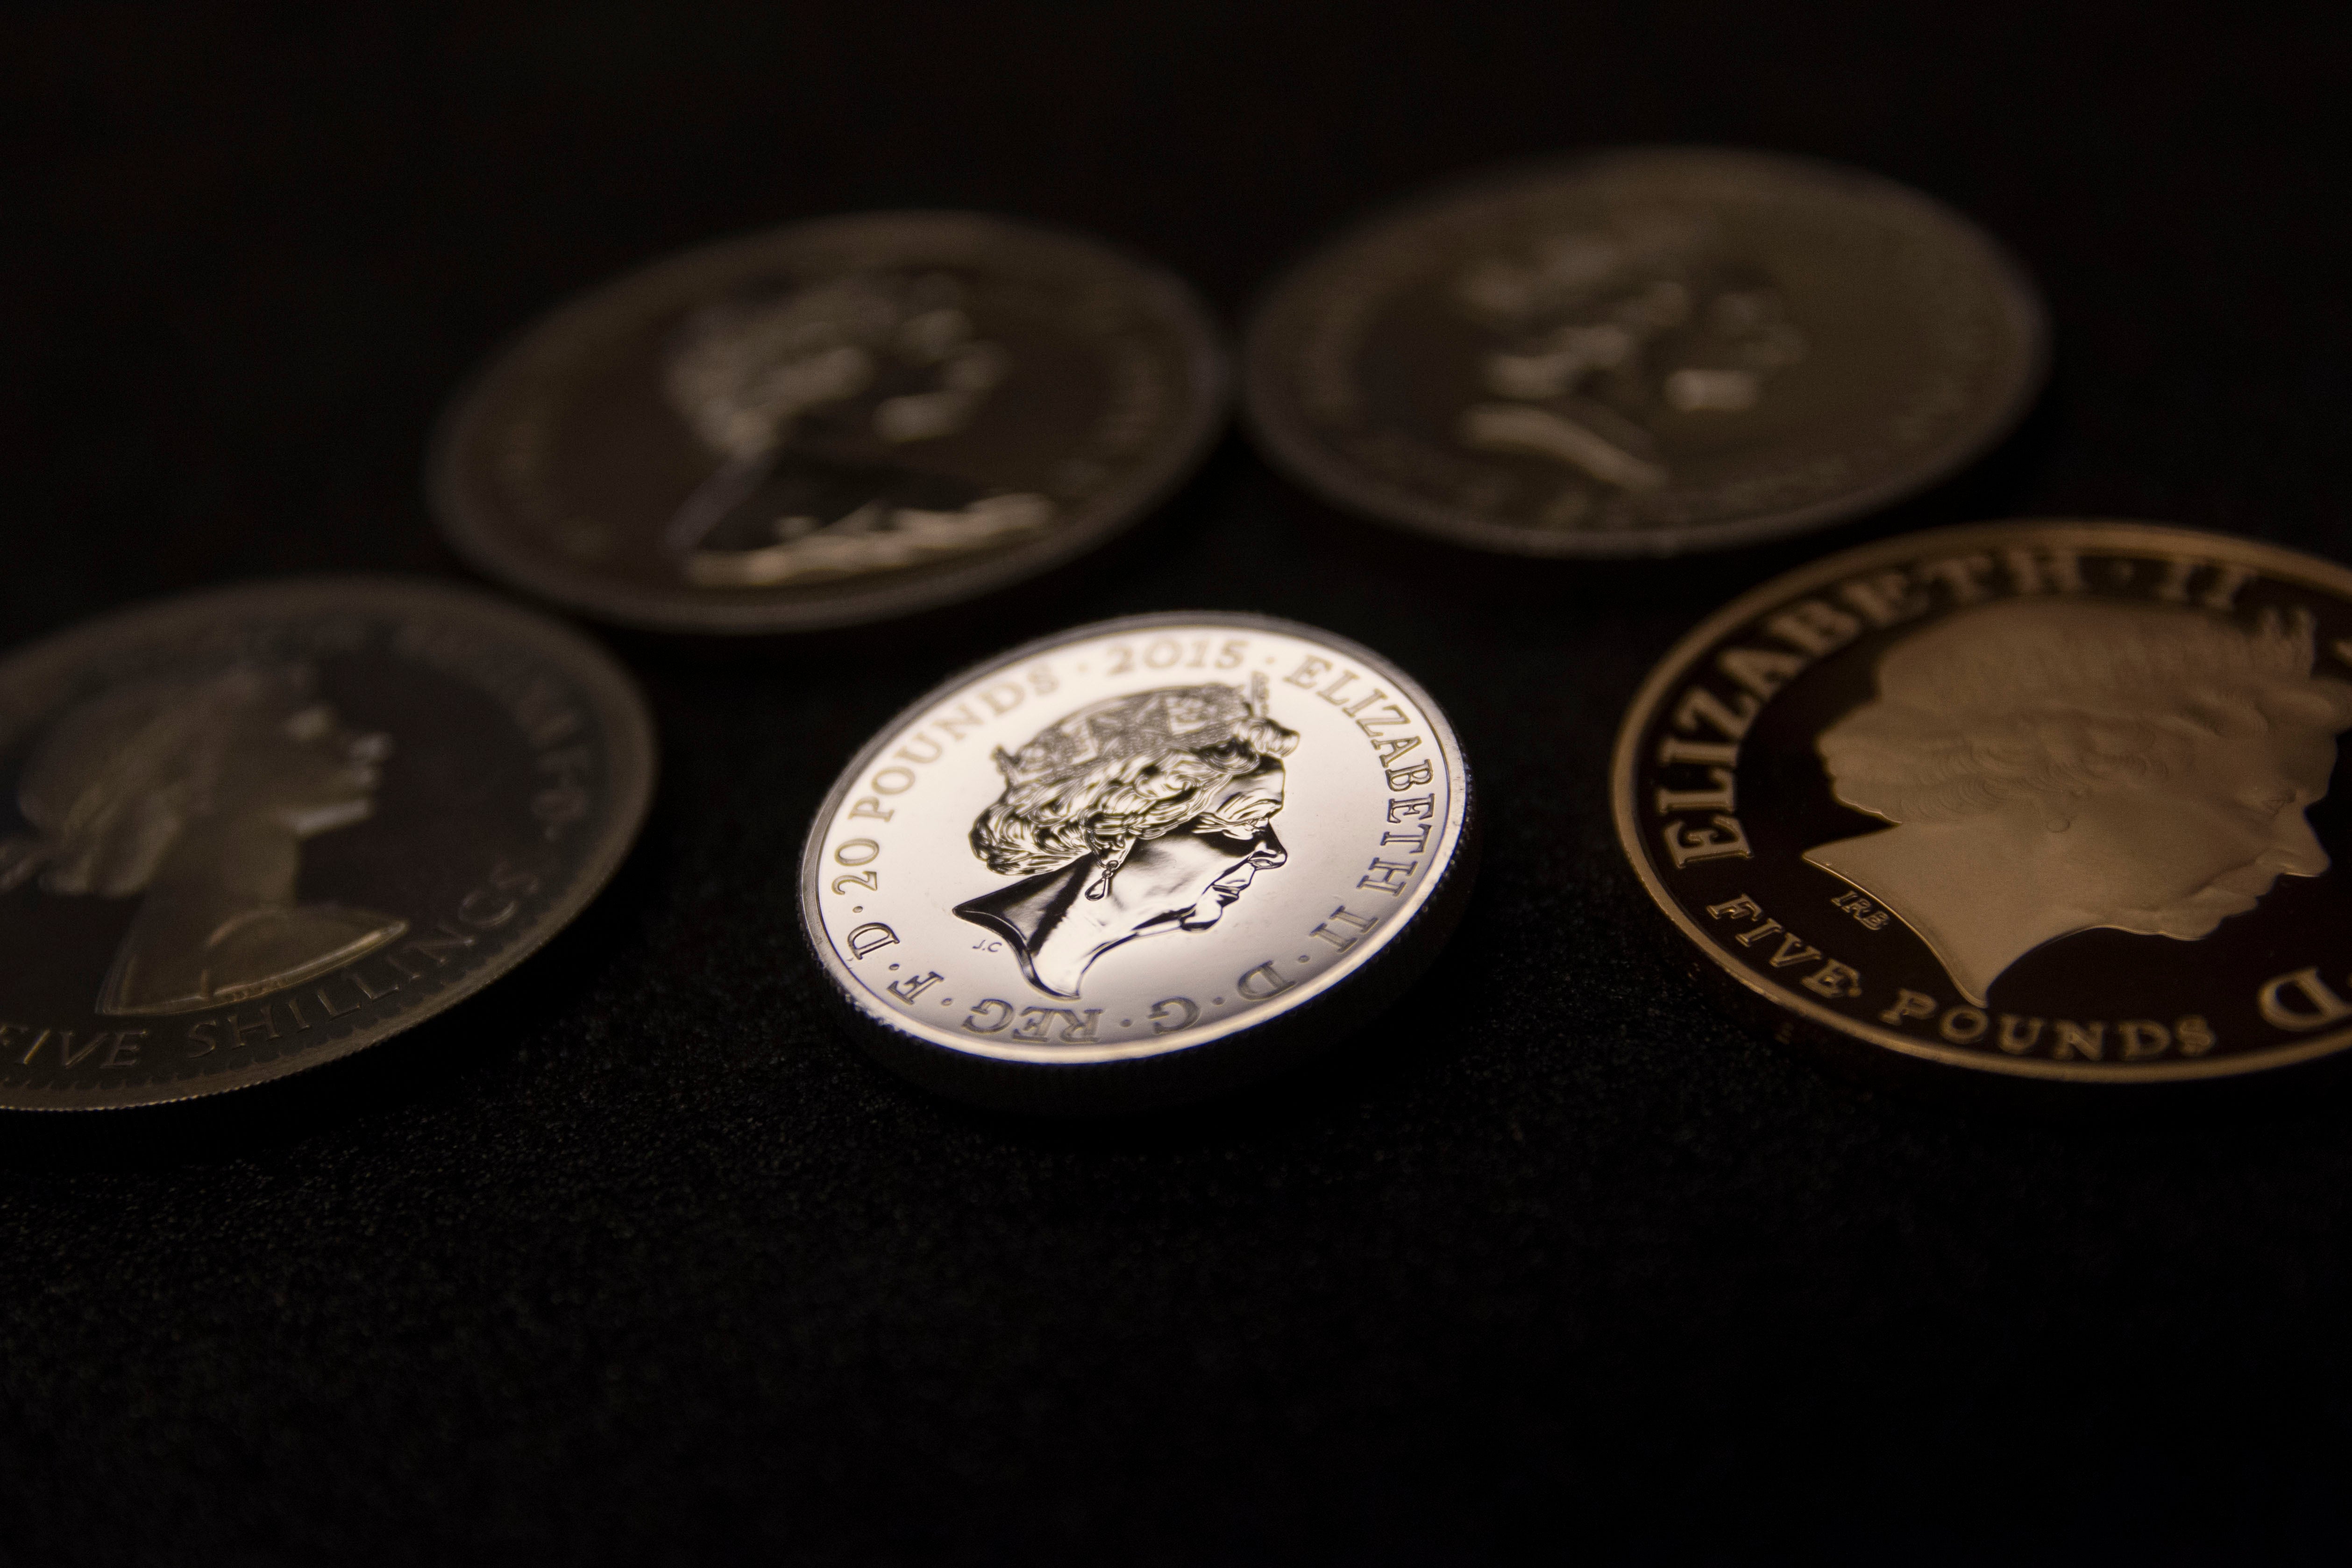 Las monedas son uno de los muchos aspectos icónicos de la vida británica que cambiarán